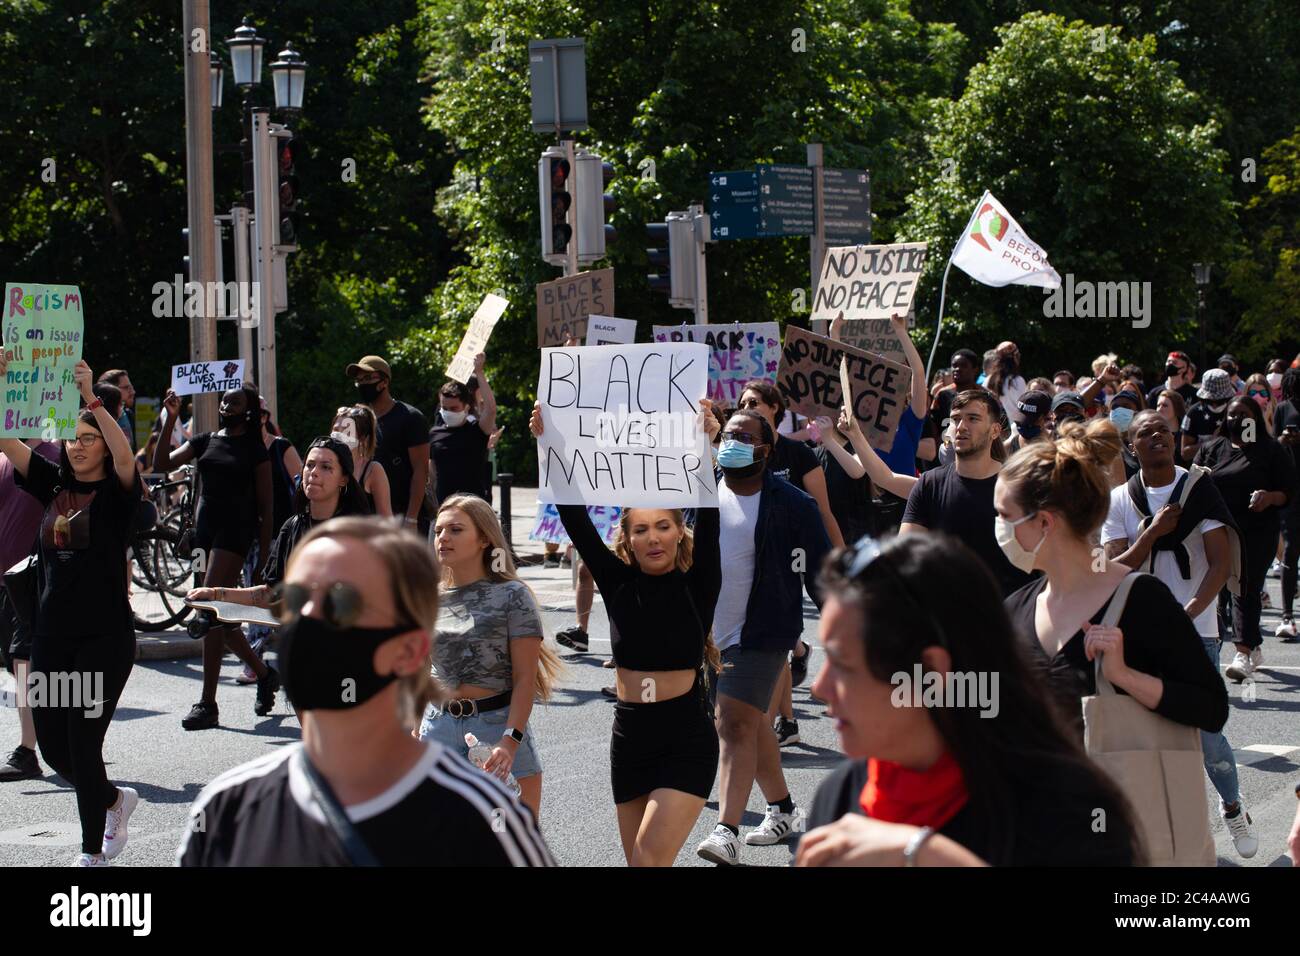 Dublín / Irlanda - 1 de junio de 2020 : miles de personas marcharon por Dublín en solidaridad con los manifestantes de Black Lives Matter en los Estados Unidos. Foto de stock